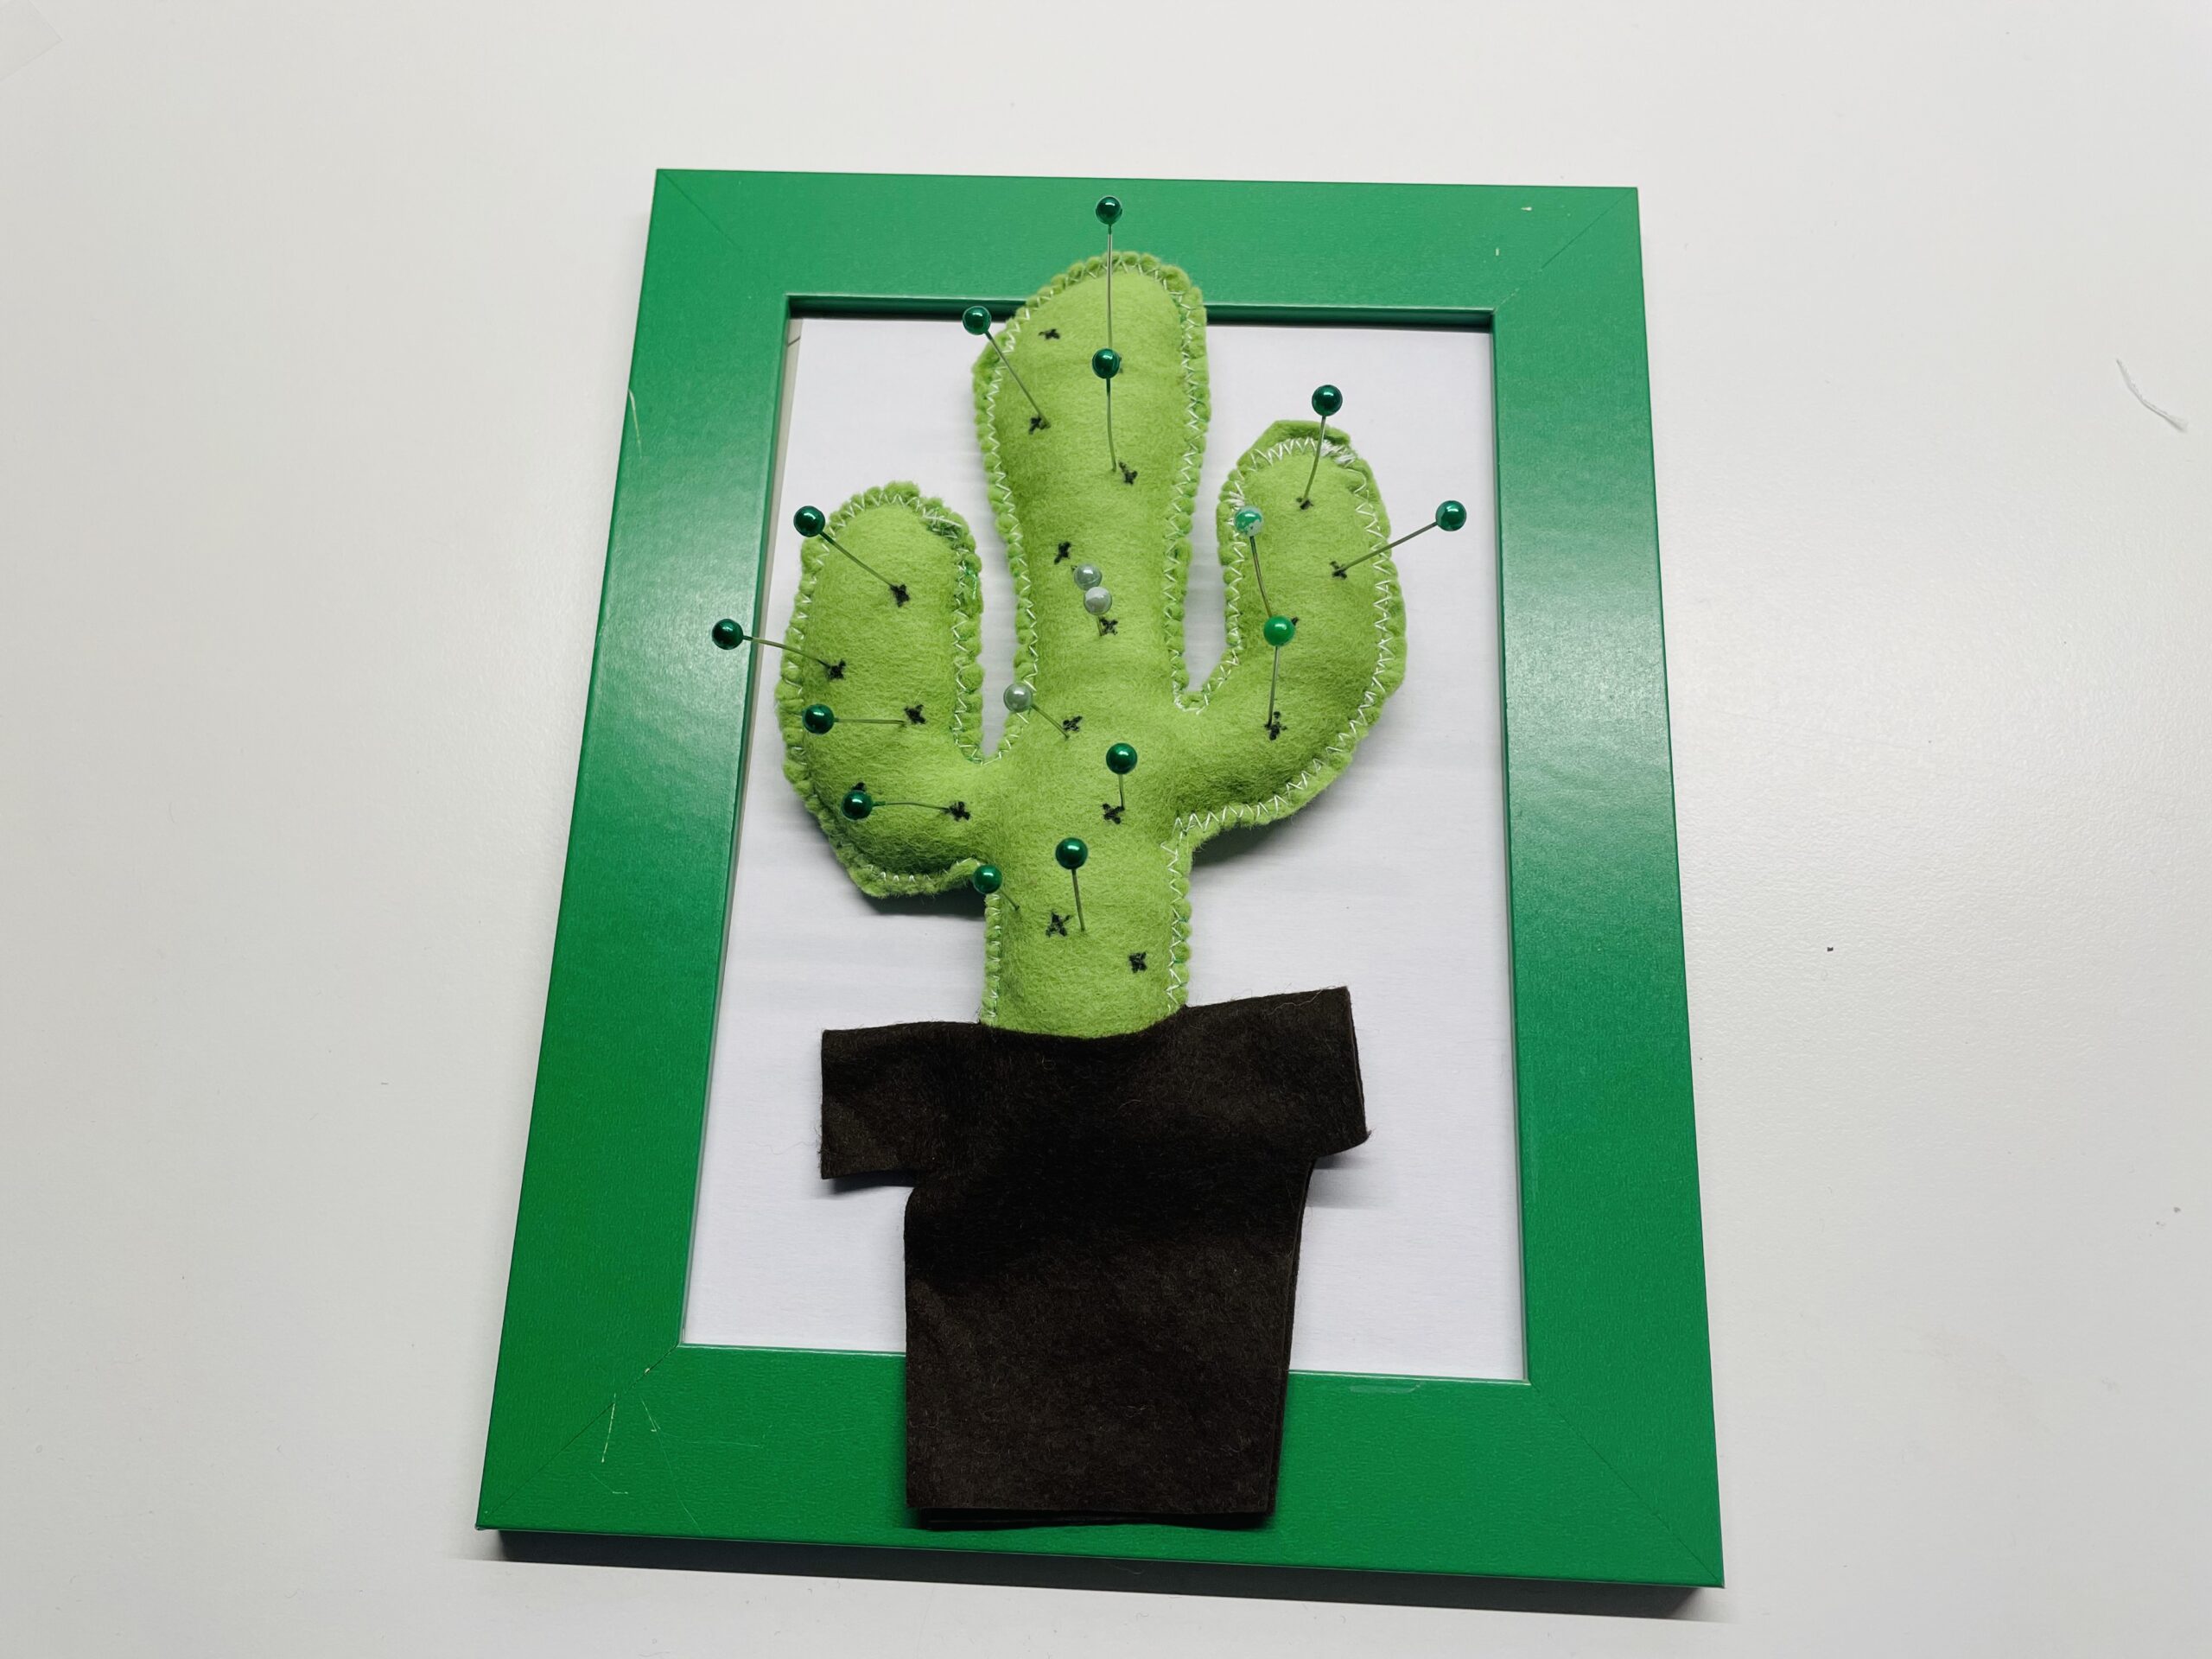 Bild zum Schritt 15 für das Bastel- und DIY-Abenteuer für Kinder: 'Als Geschenkgutschein:  Ihr könnt den Kaktus auch auf einem...'